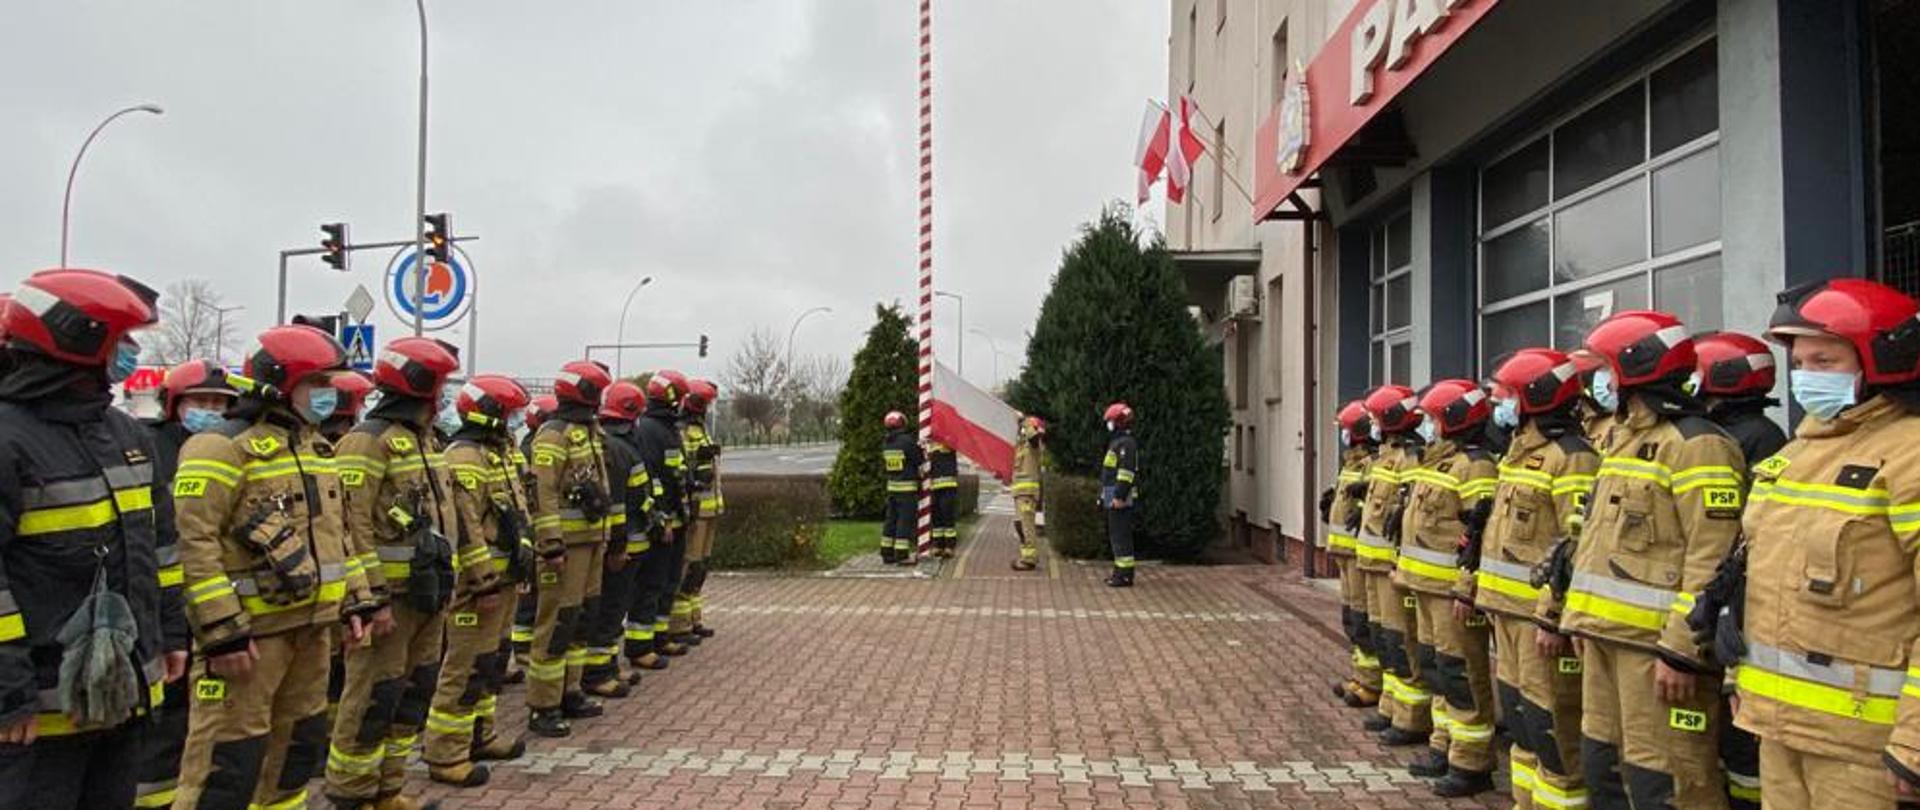 Przemyscy strażacy uczcili Narodowe Święto Niepodległości. Zbiórka w mundurach specjalnych na placu zewnętrznym, w tle podnoszenie Flagi Państwowej. 